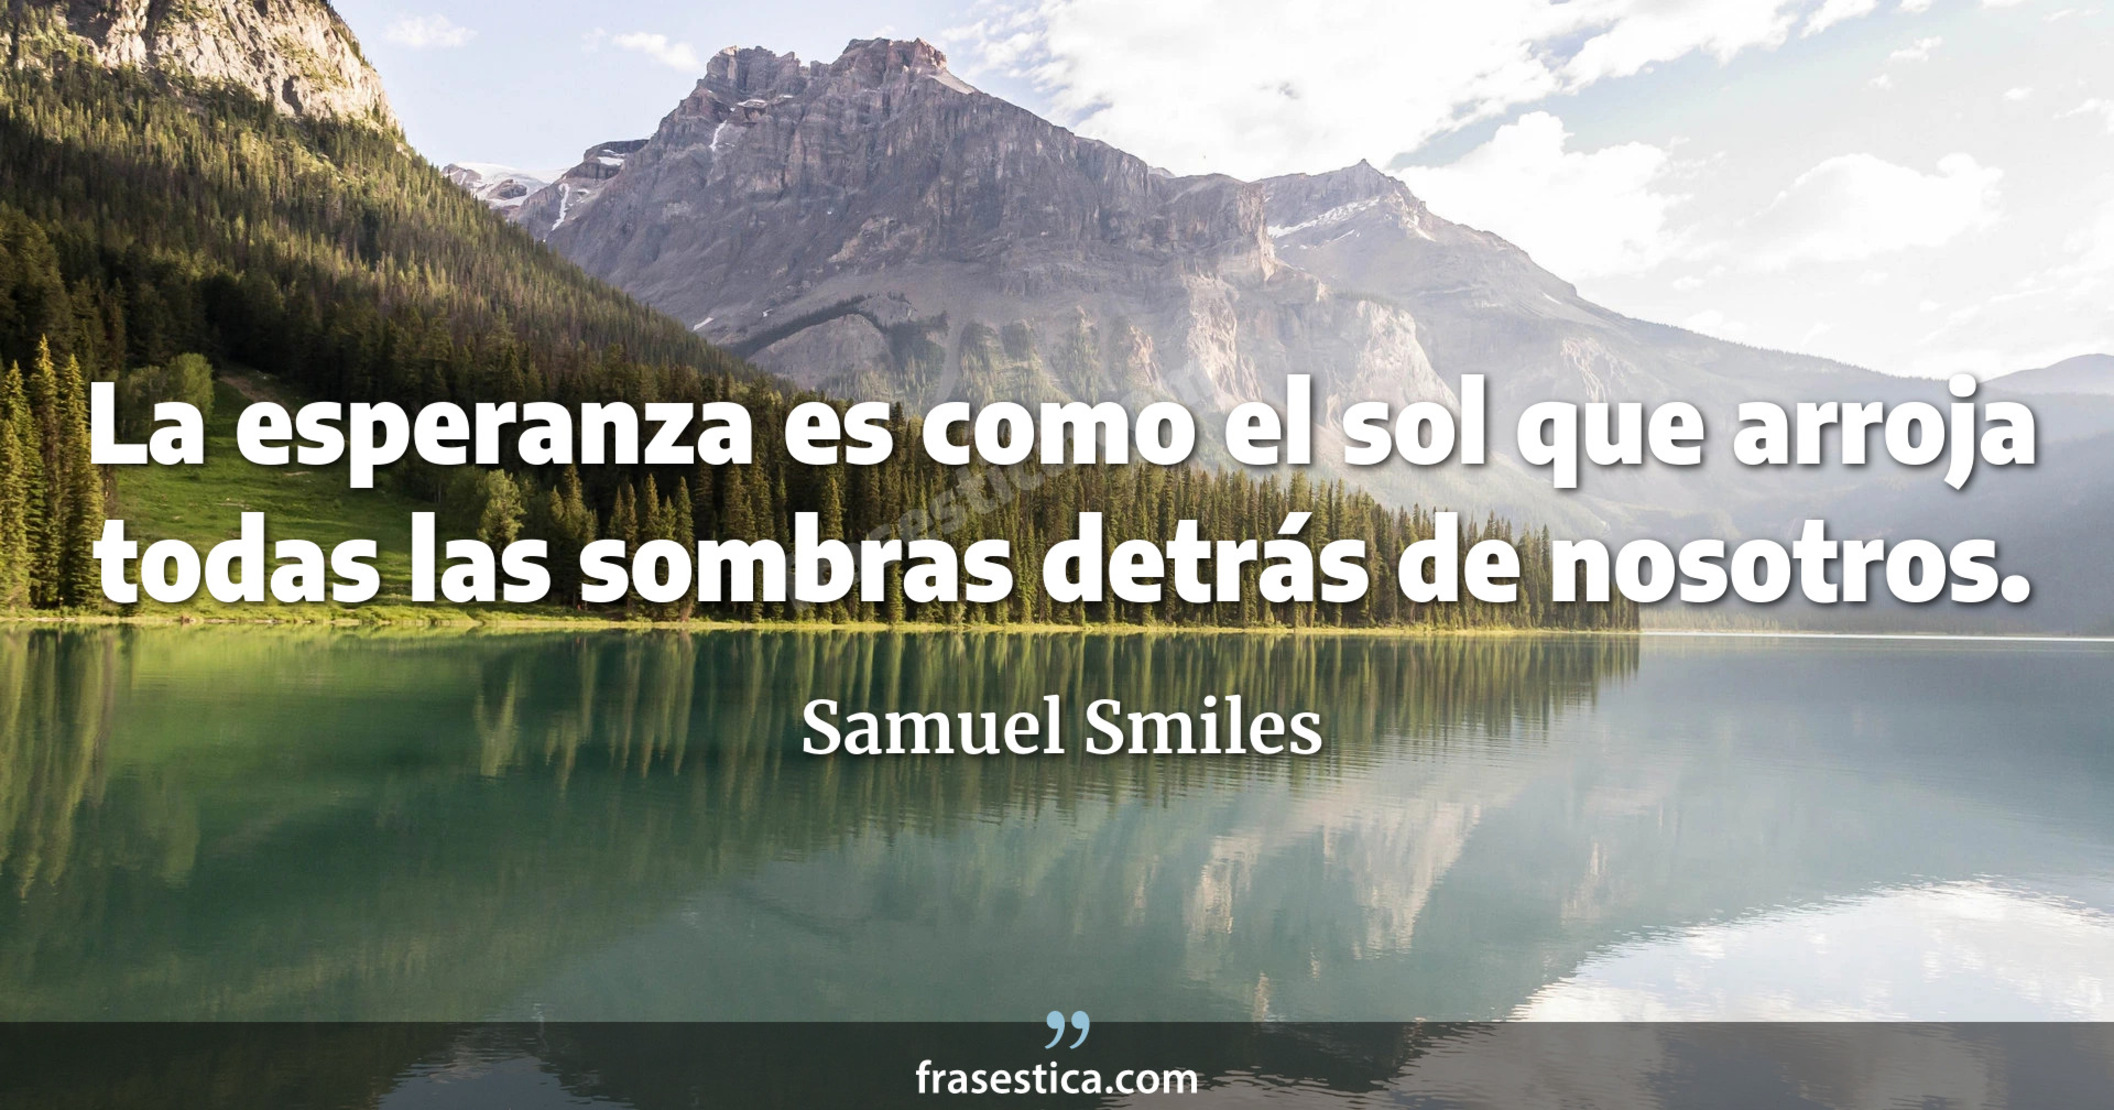 La esperanza es como el sol que arroja todas las sombras detrás de nosotros. - Samuel Smiles